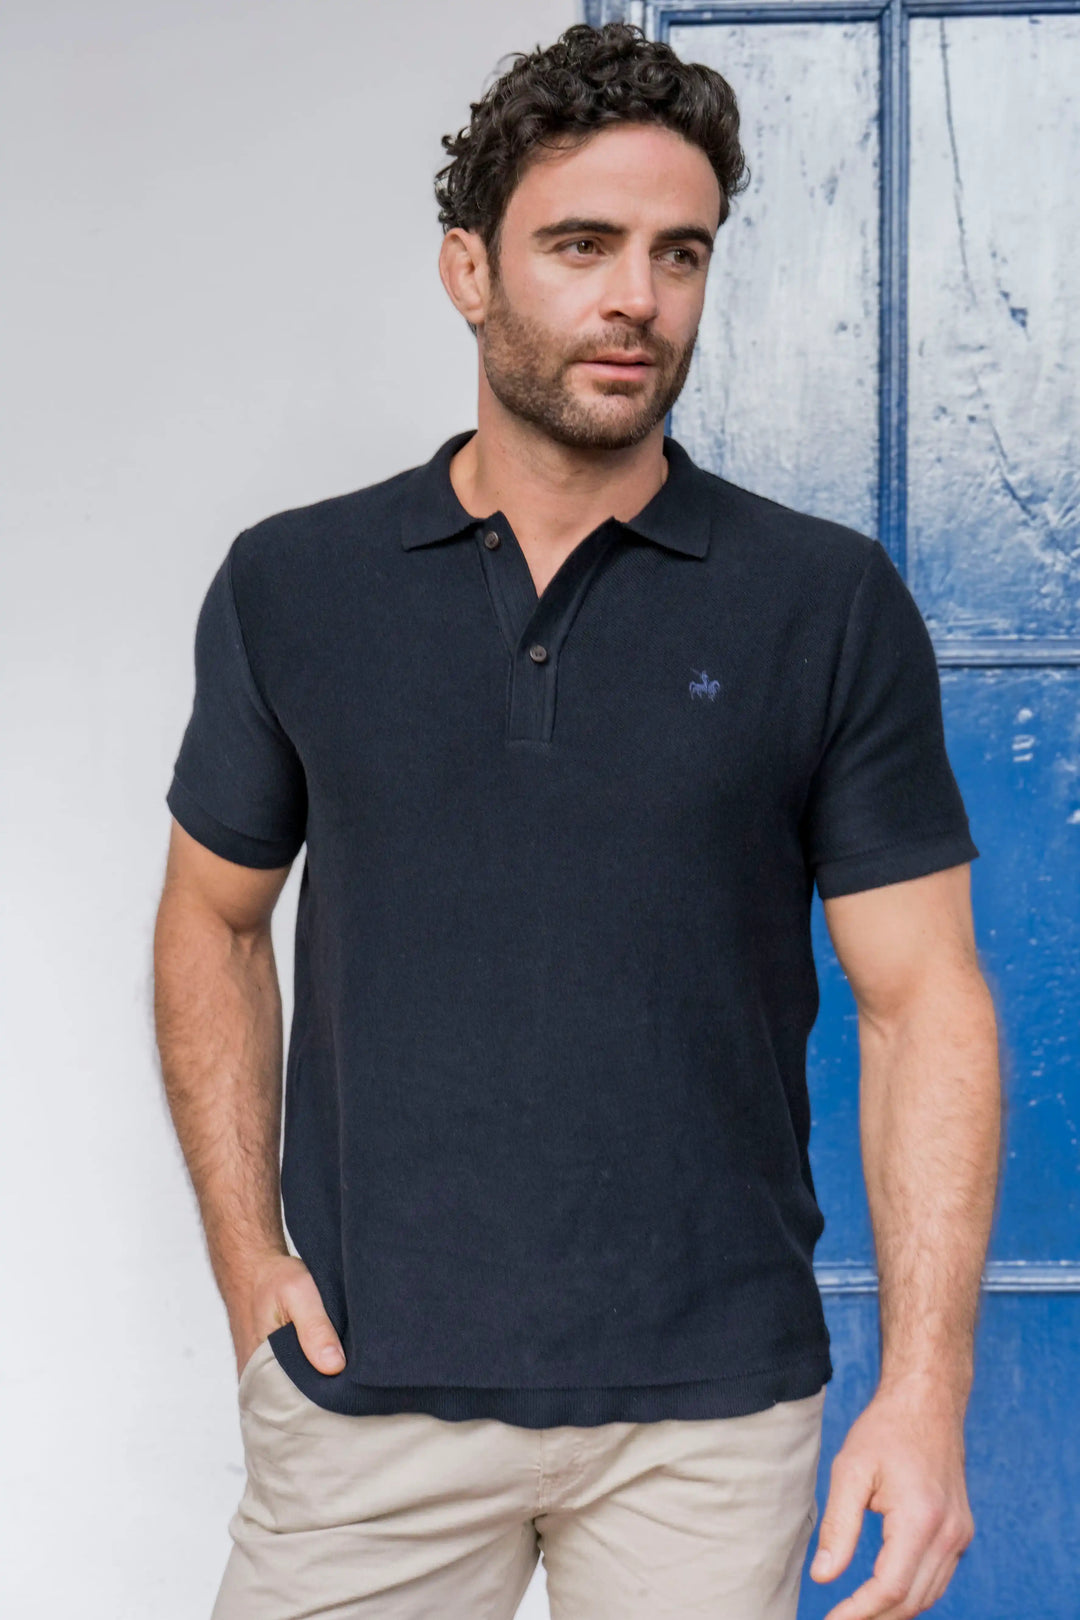 Camisa polo para hombre azul oscuro, tejida con logo bordado en el pecho.